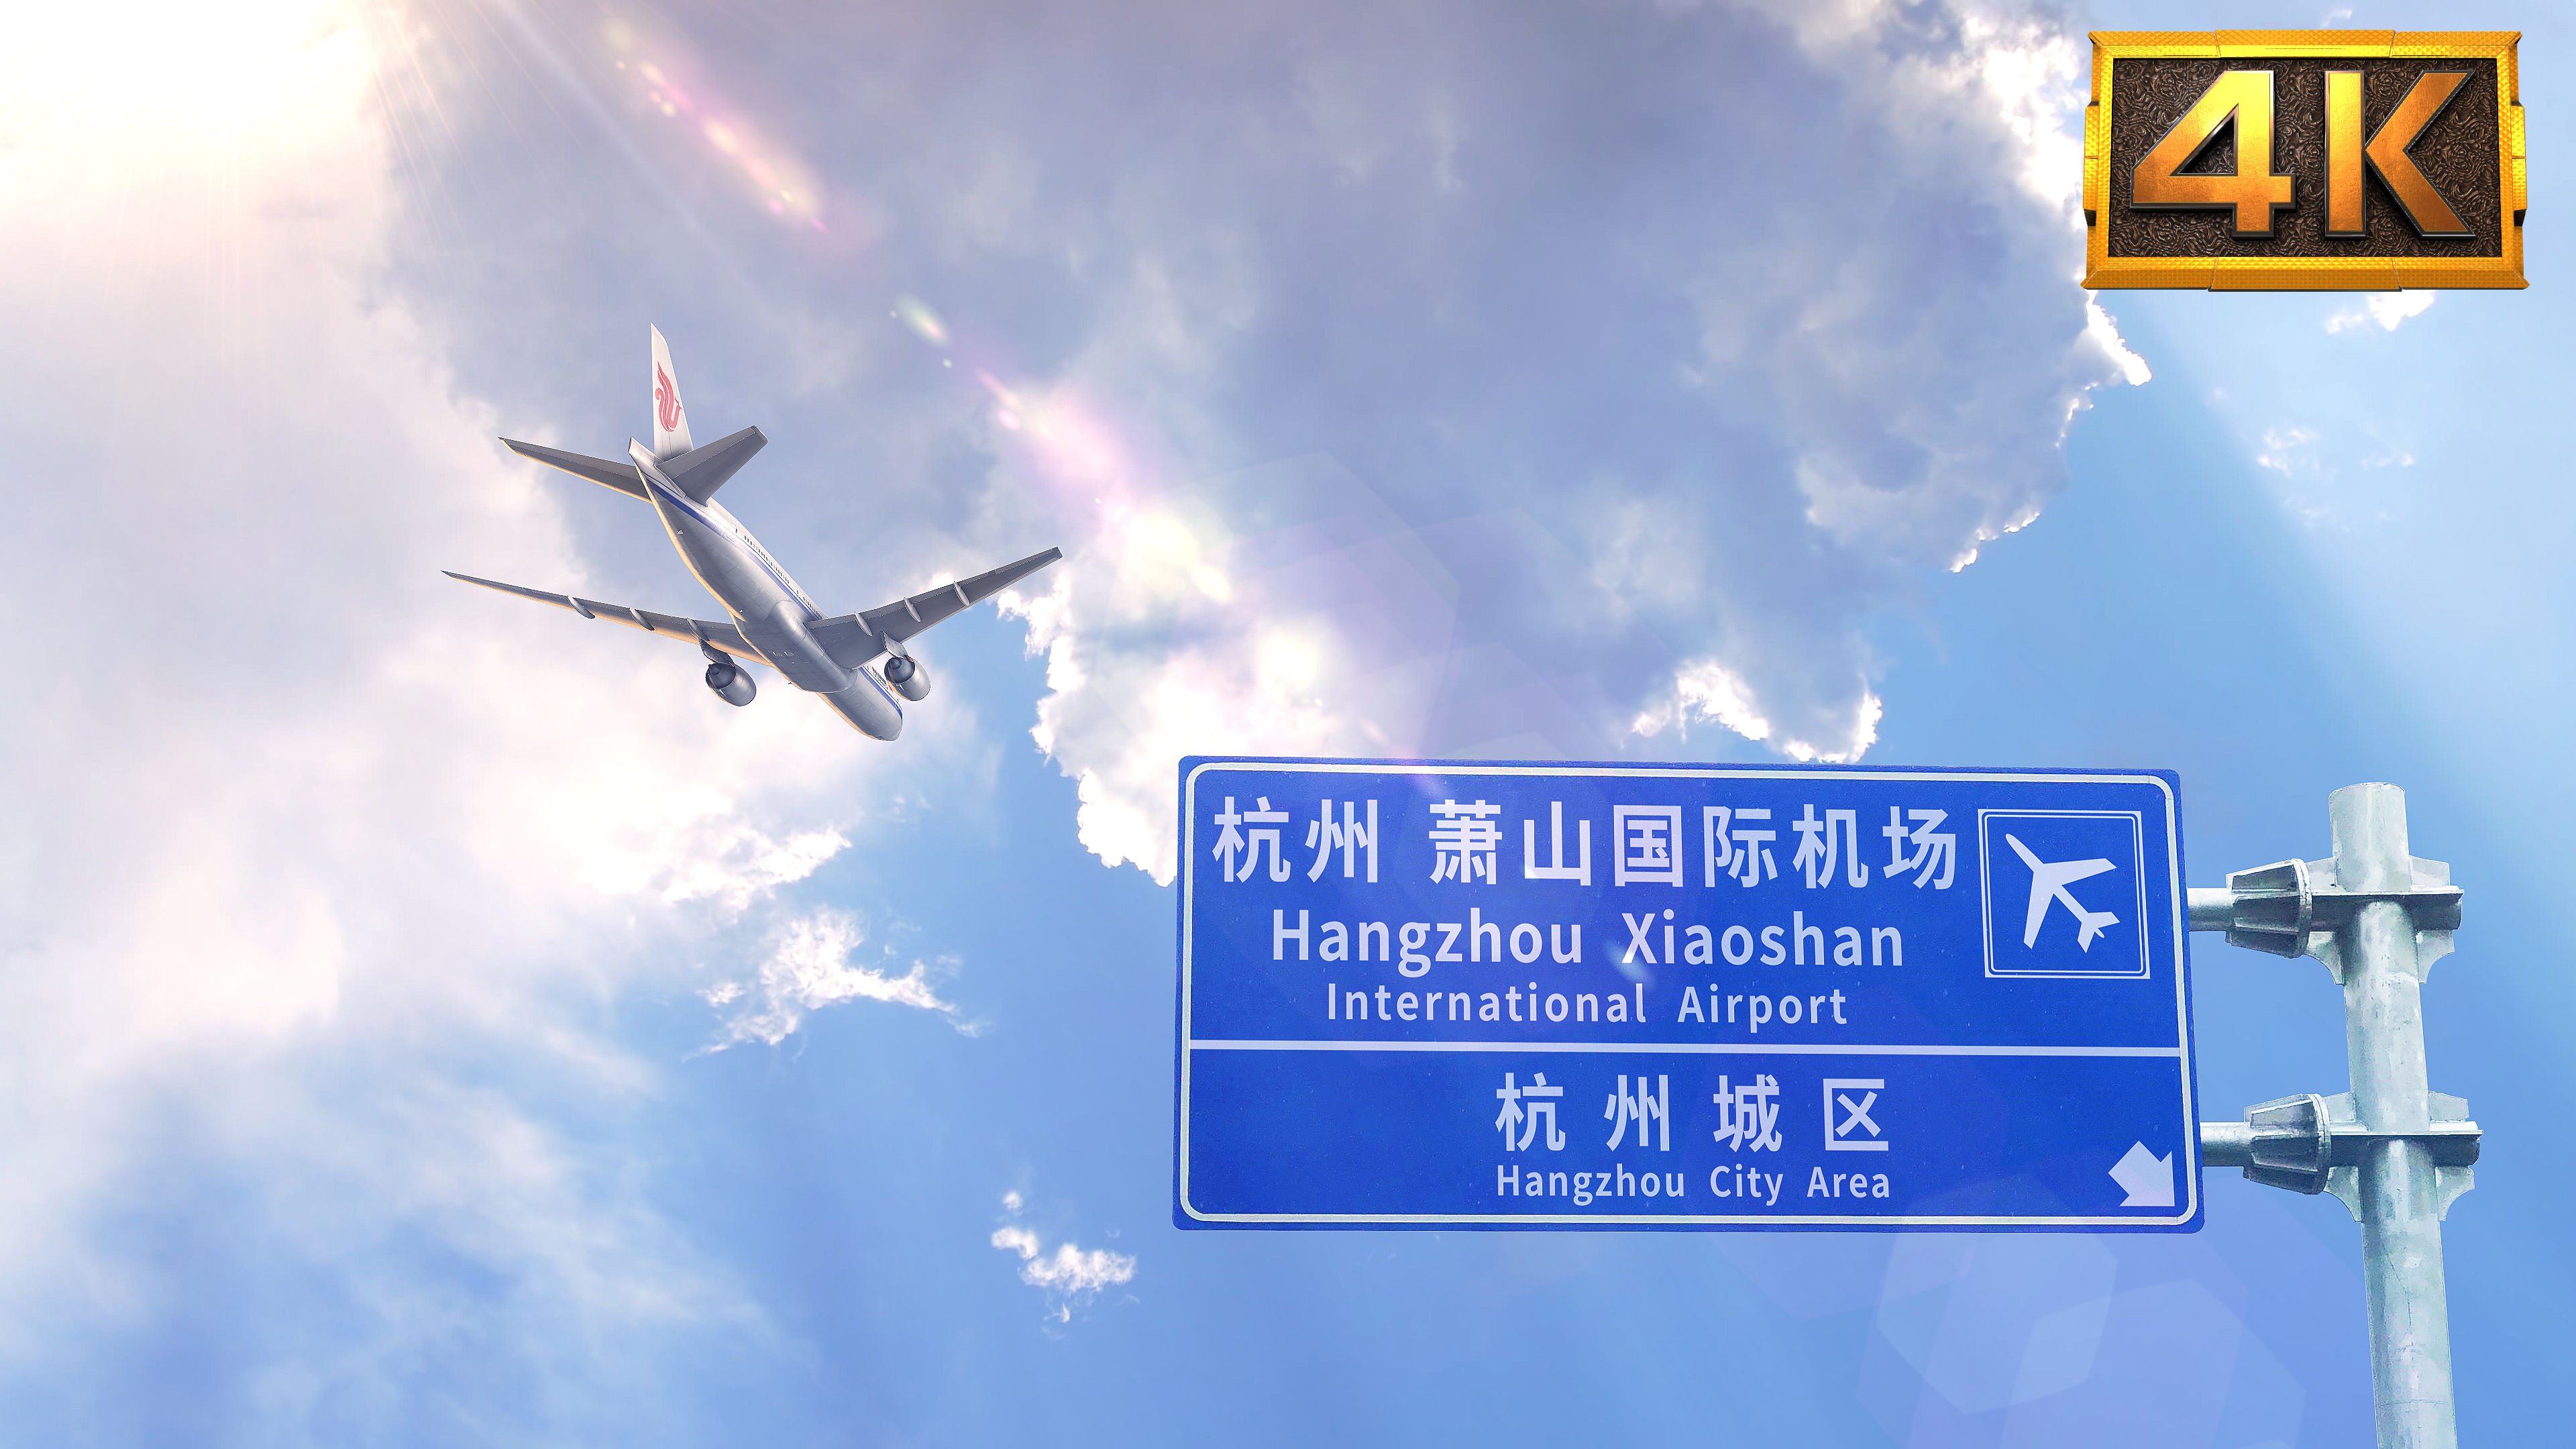 飞机抵达-杭州萧山,店铺有其它国际机场标牌